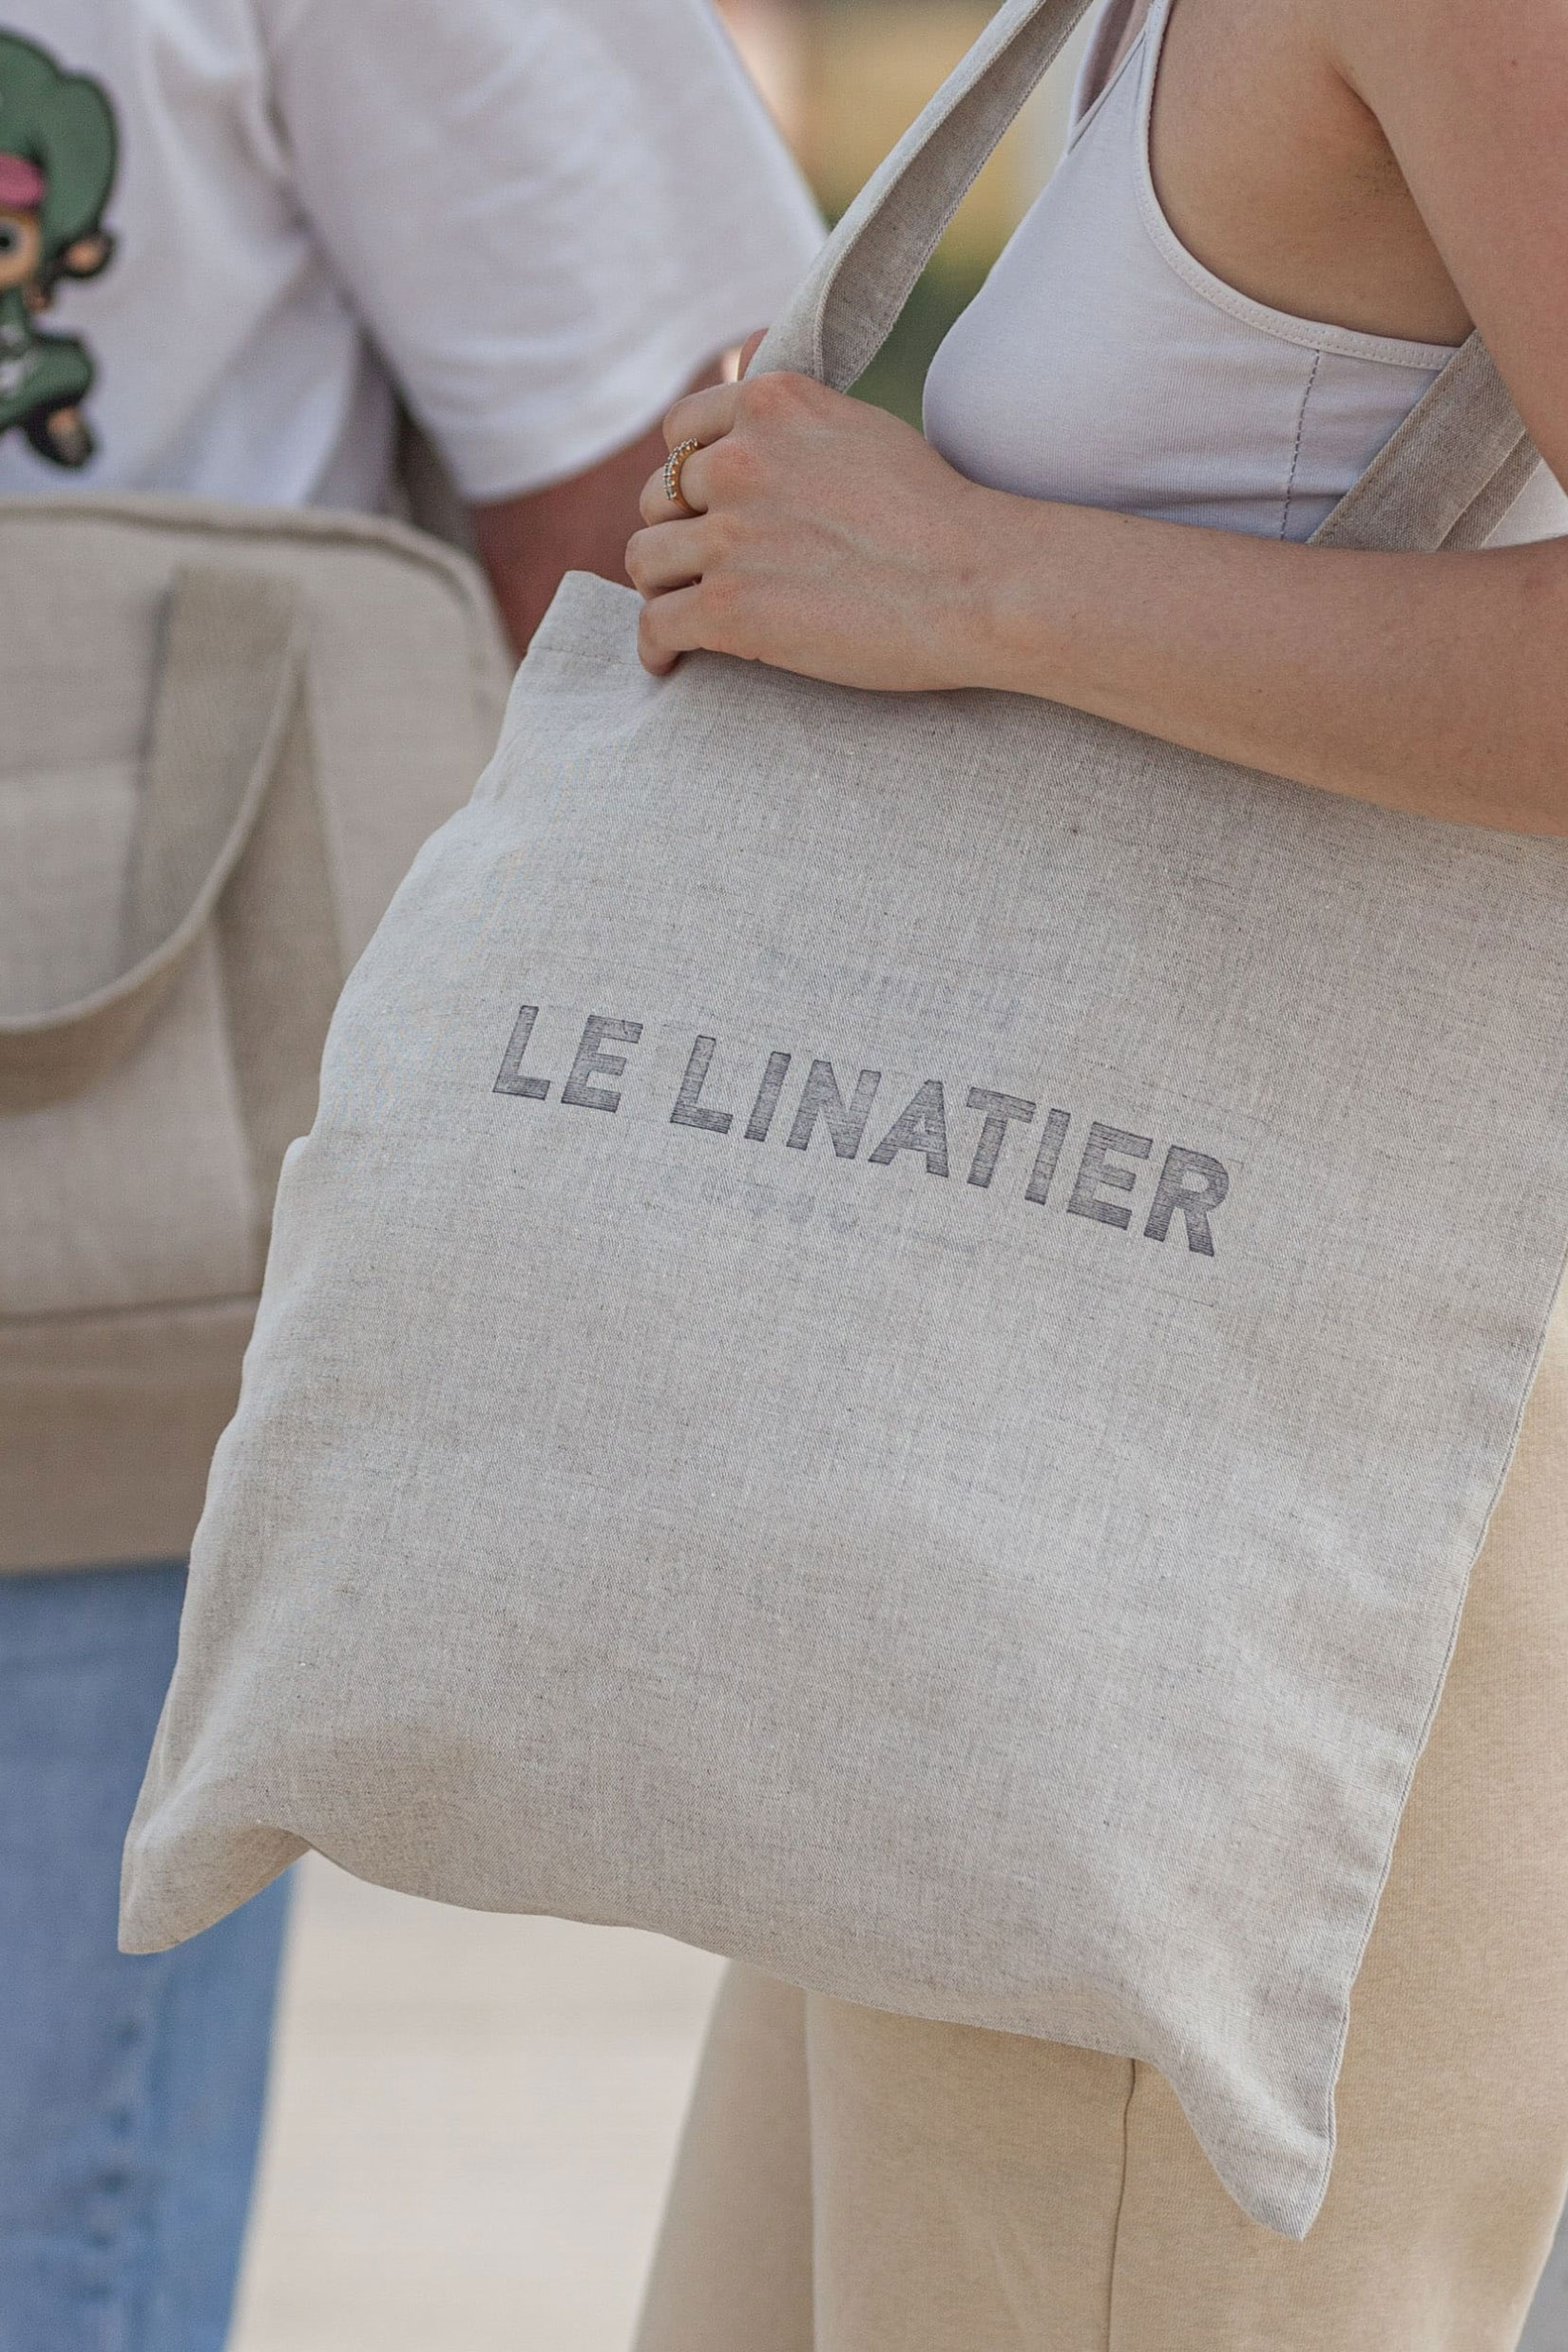 Le Linatier - sac pratique mixte en lin français, banane crossbody, tote bag et sac ordinateur fabriqué en france